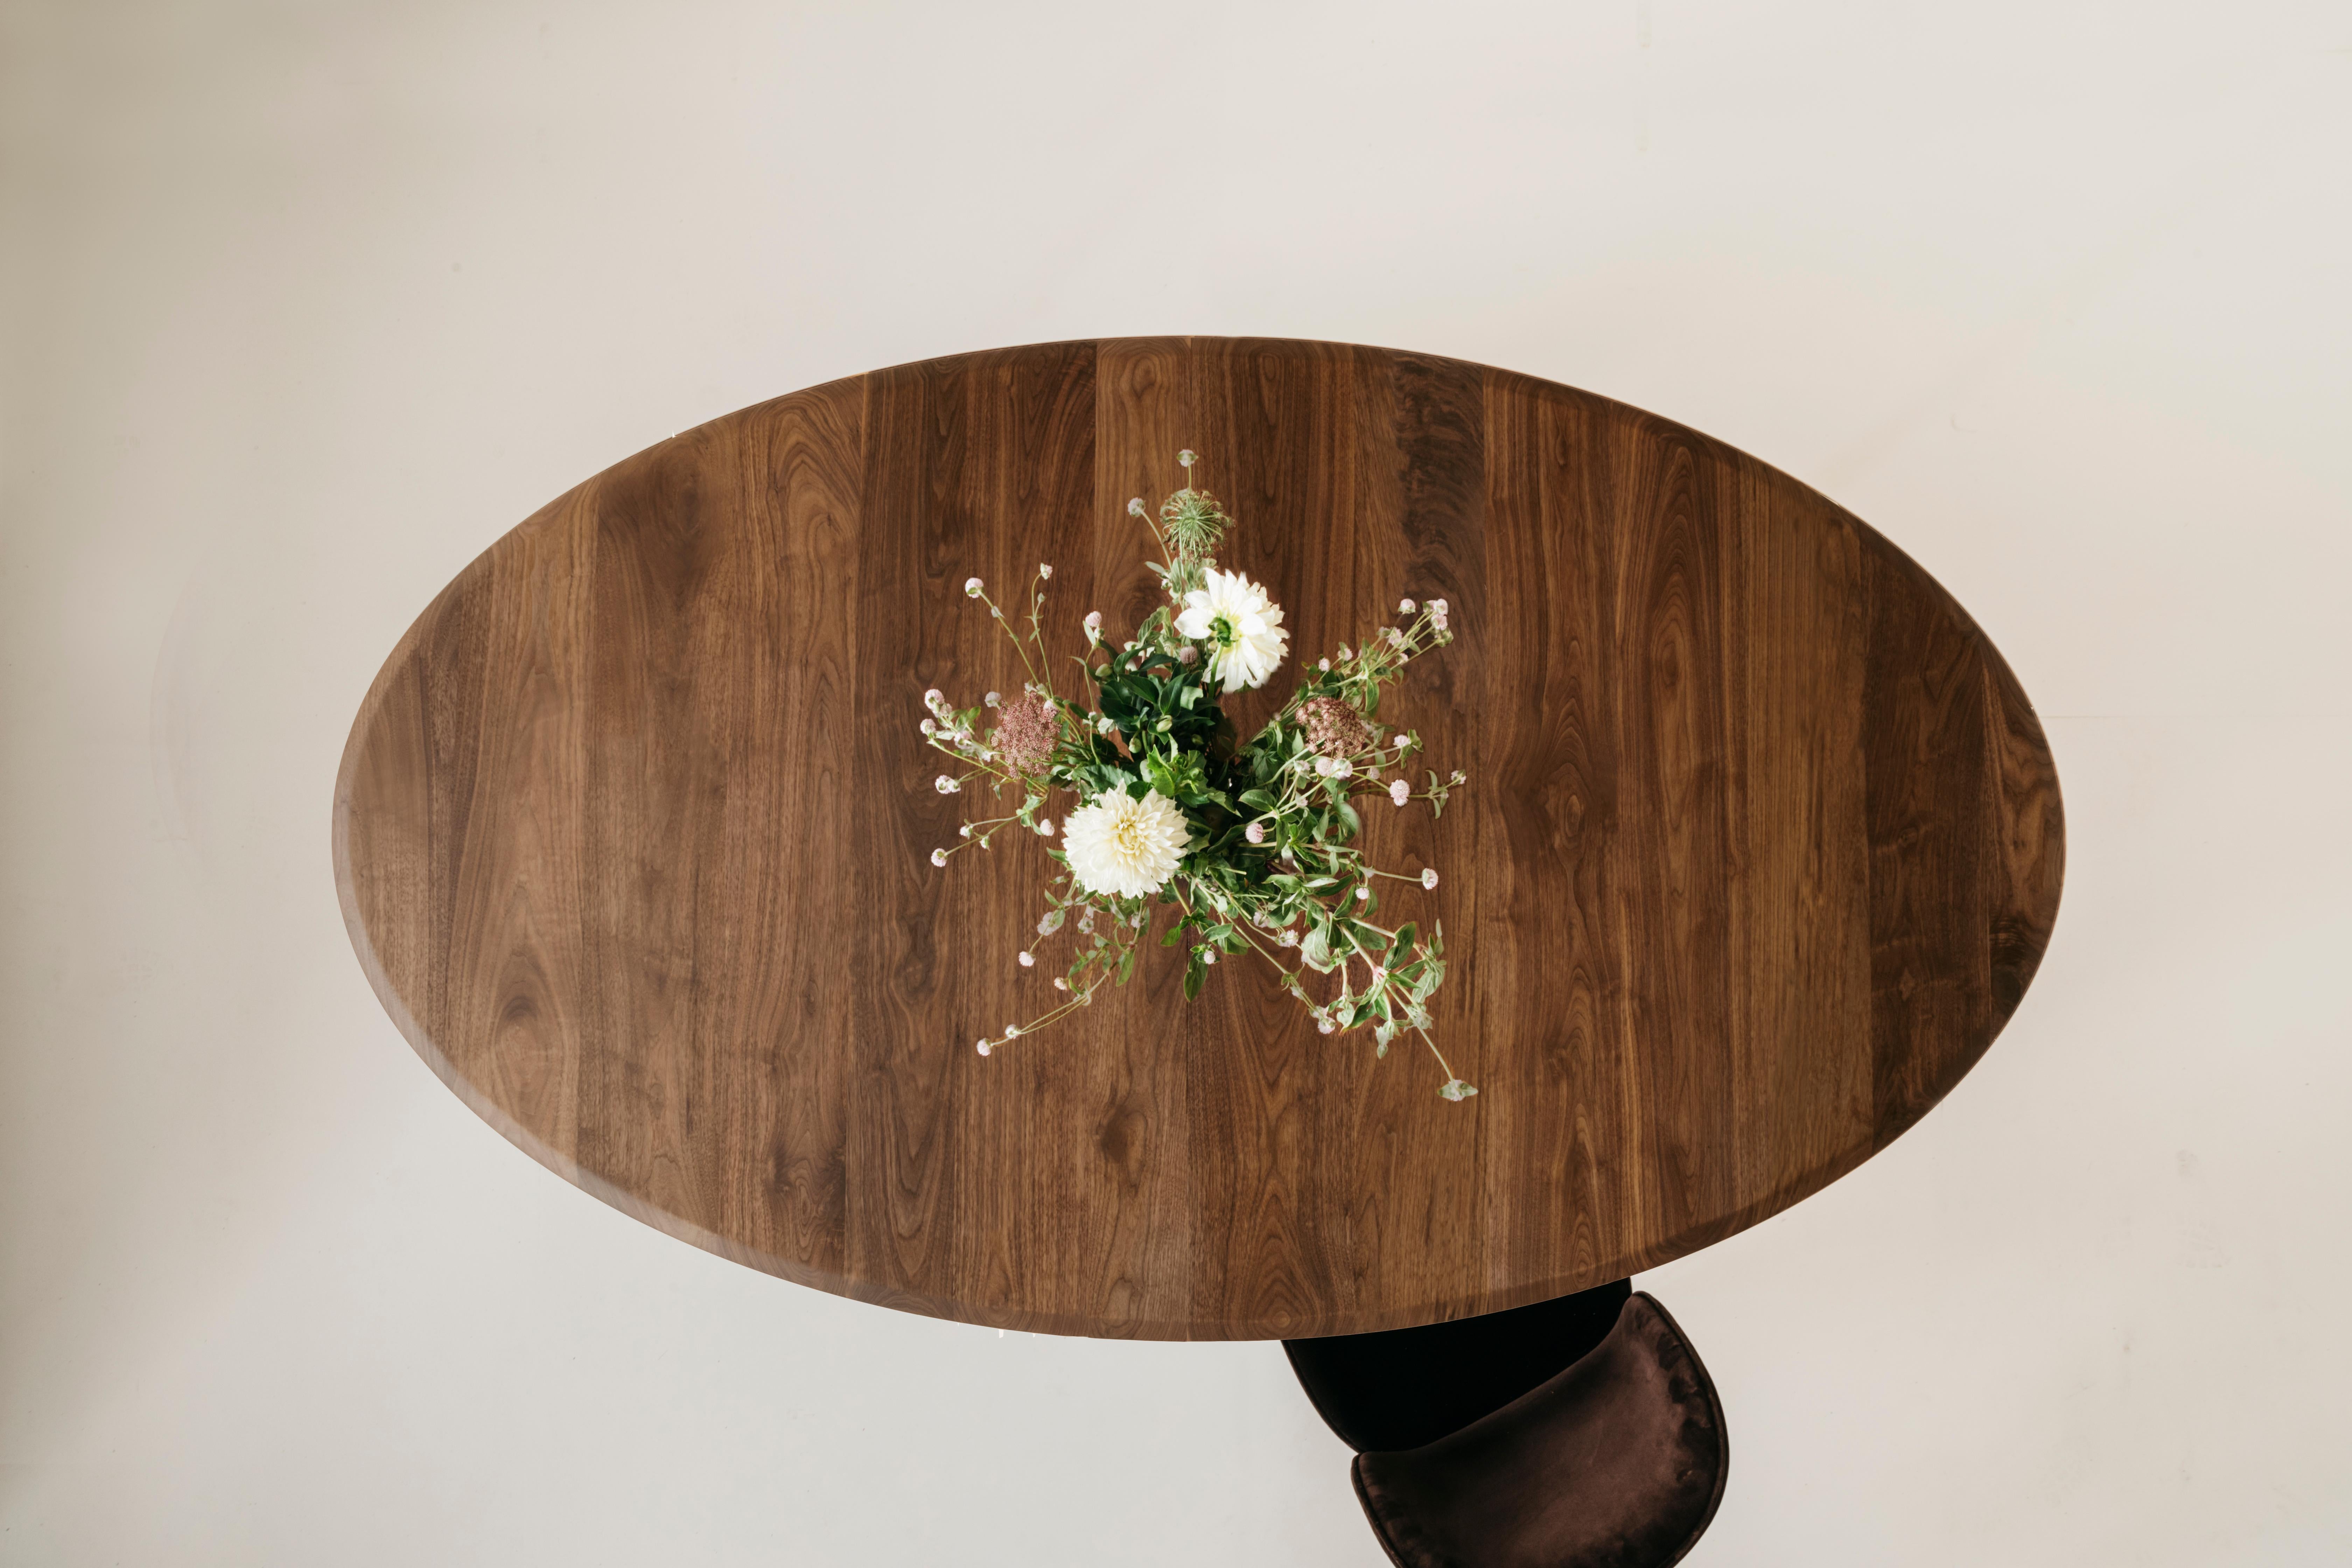 La table à manger ovale Richard Watson offre une forme confortable et intime pour dîner avec d'autres personnes. Cette table peut être rallongée à l'aide d'une rallonge lisse qui peut accueillir une feuille de 20 pouces.

Chaque pièce Richard